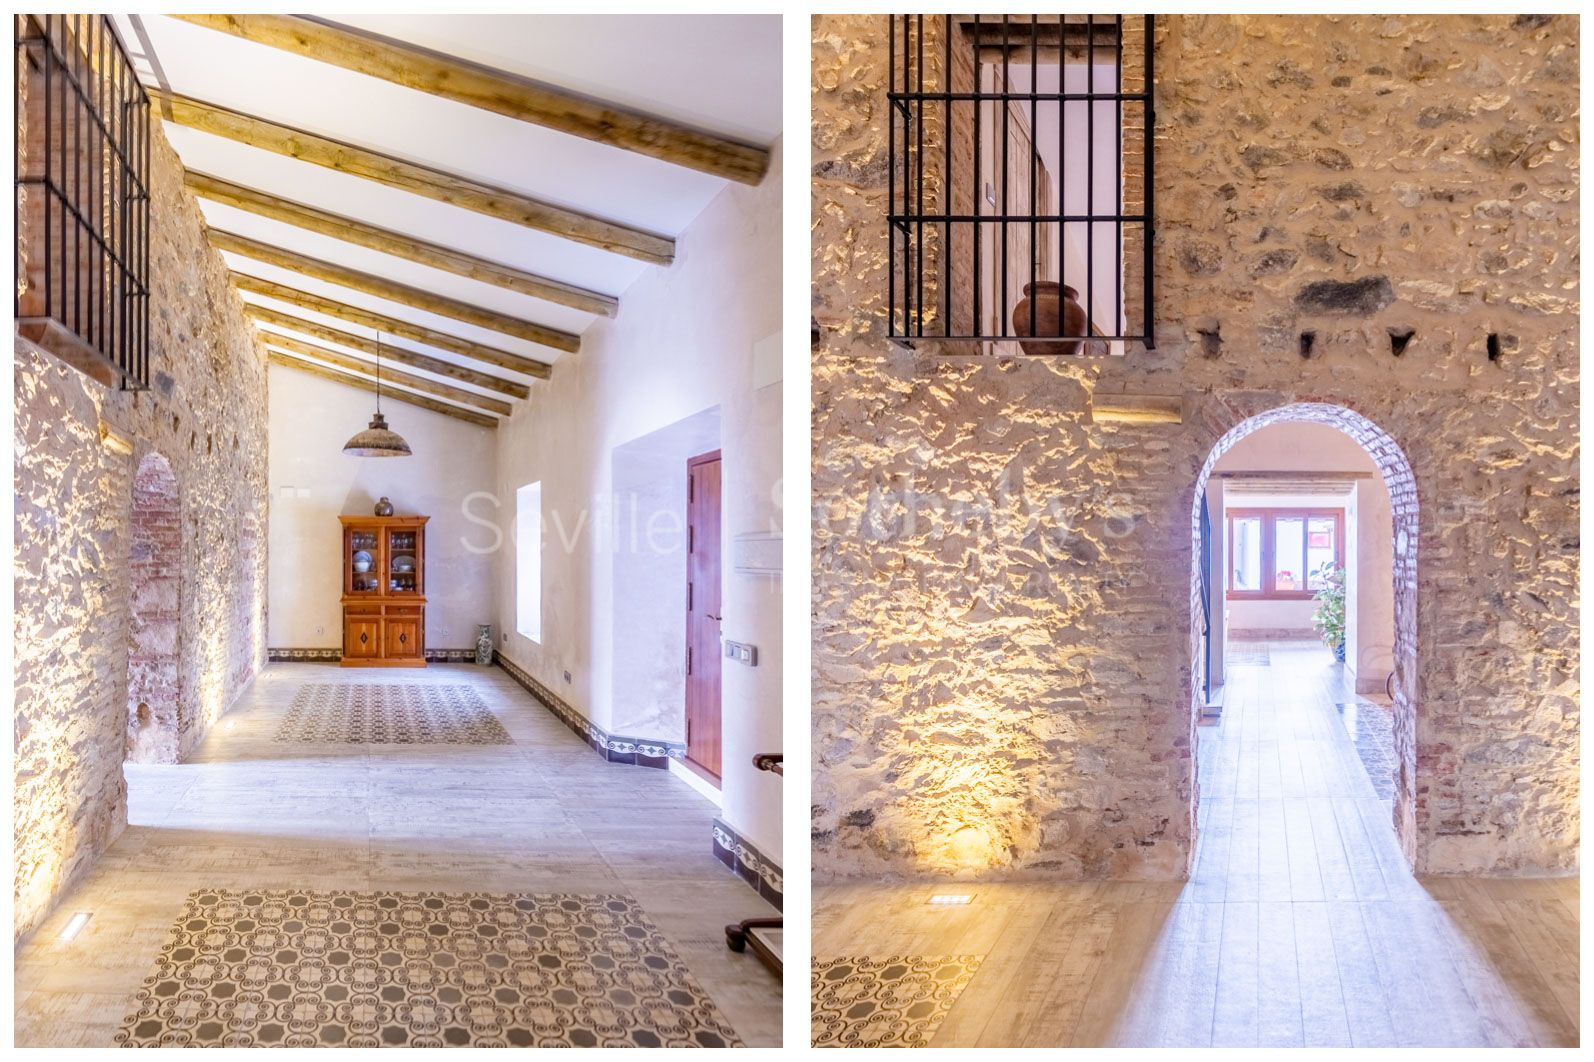 Exclusiva vivienda unifamiliar recién reformada en Cuenca Minera de Huelva con garaje y piscina.